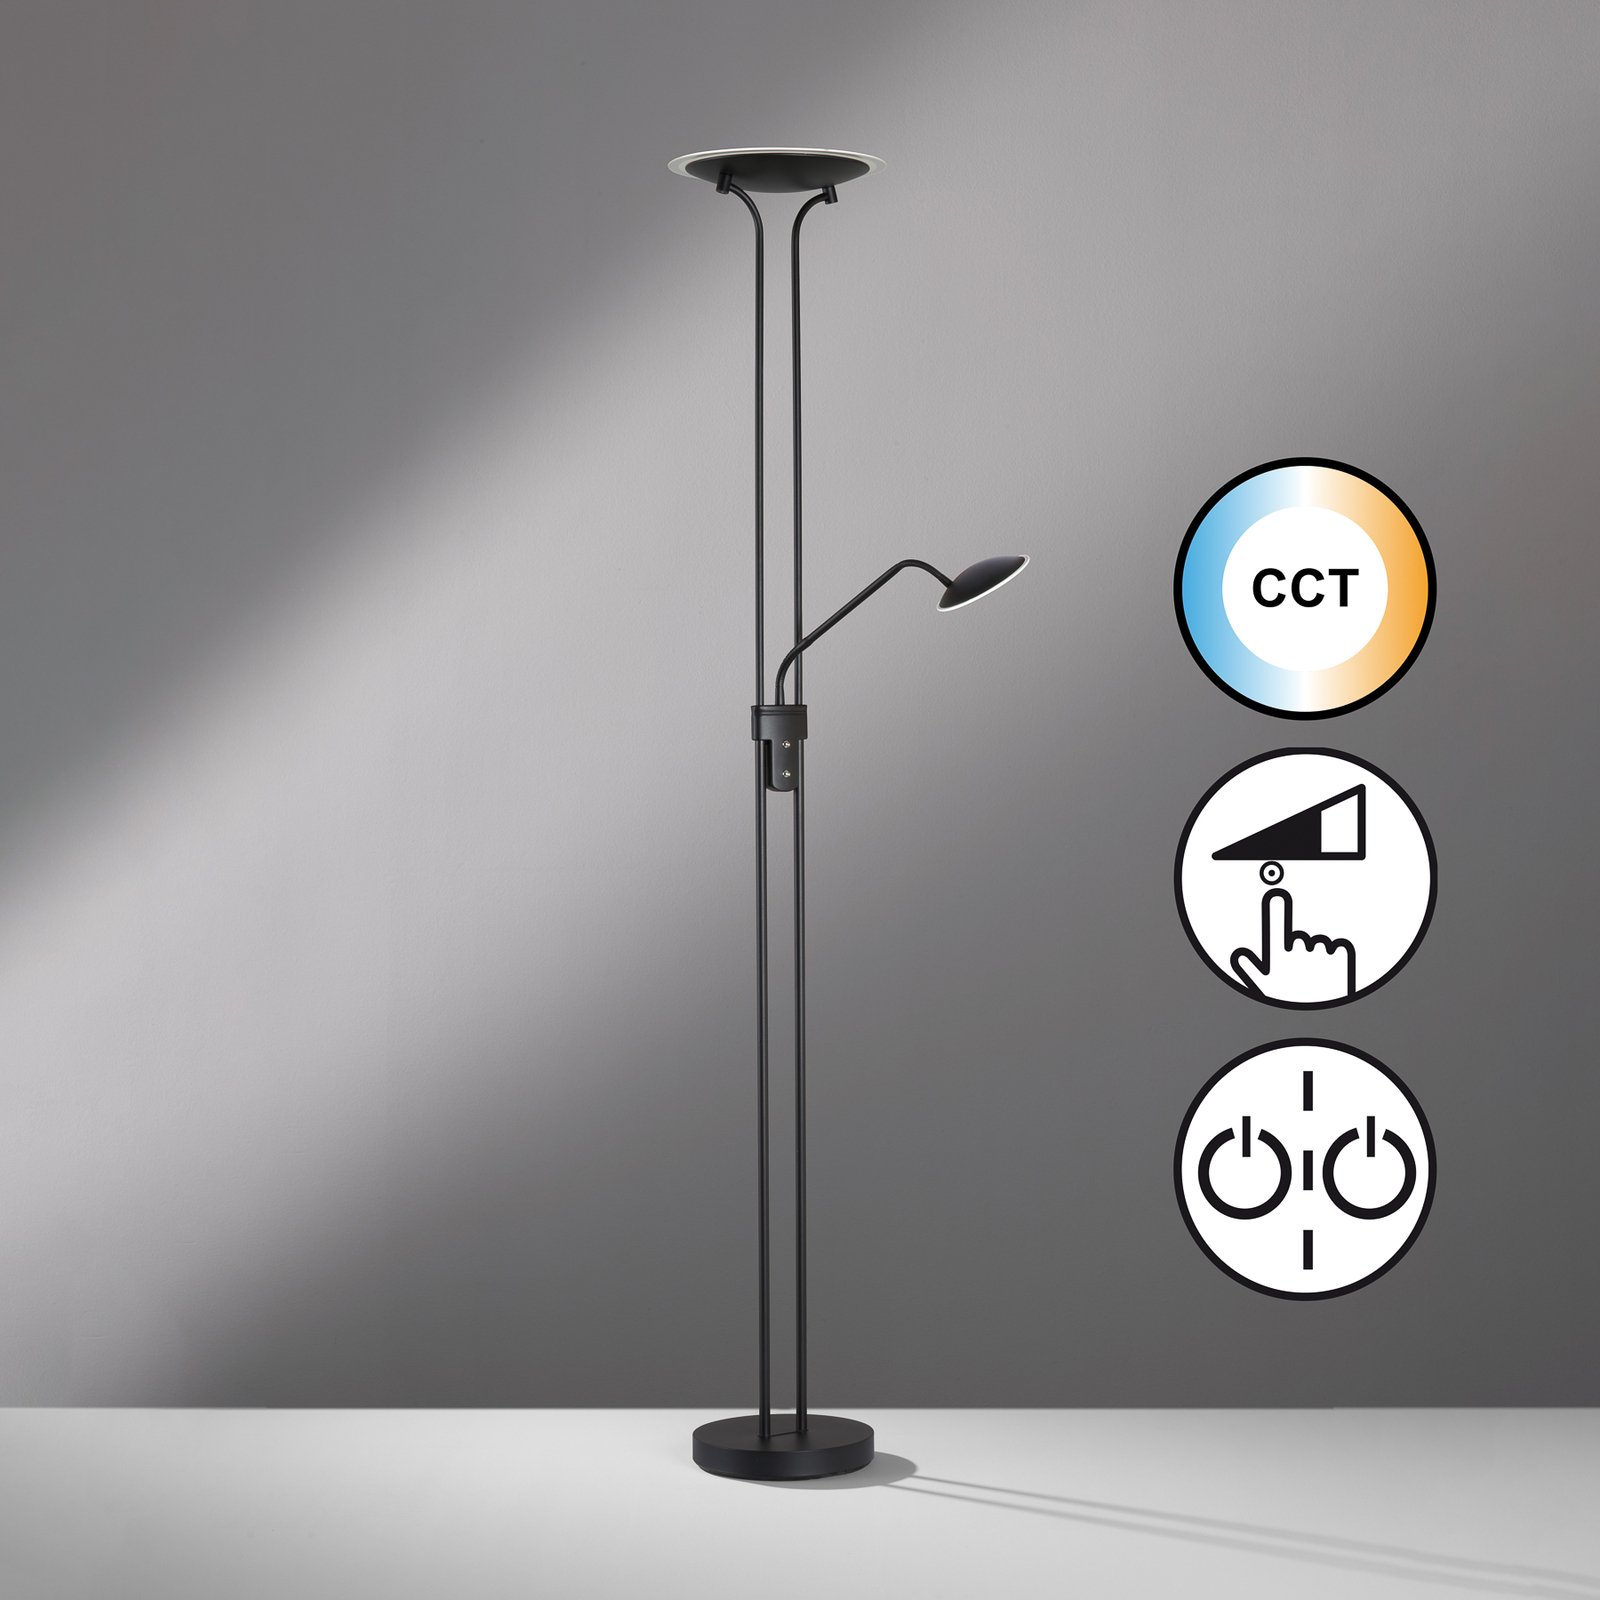 LED stojací lampa Tallri, černá, 180 cm, 2 světla, kov, CCT